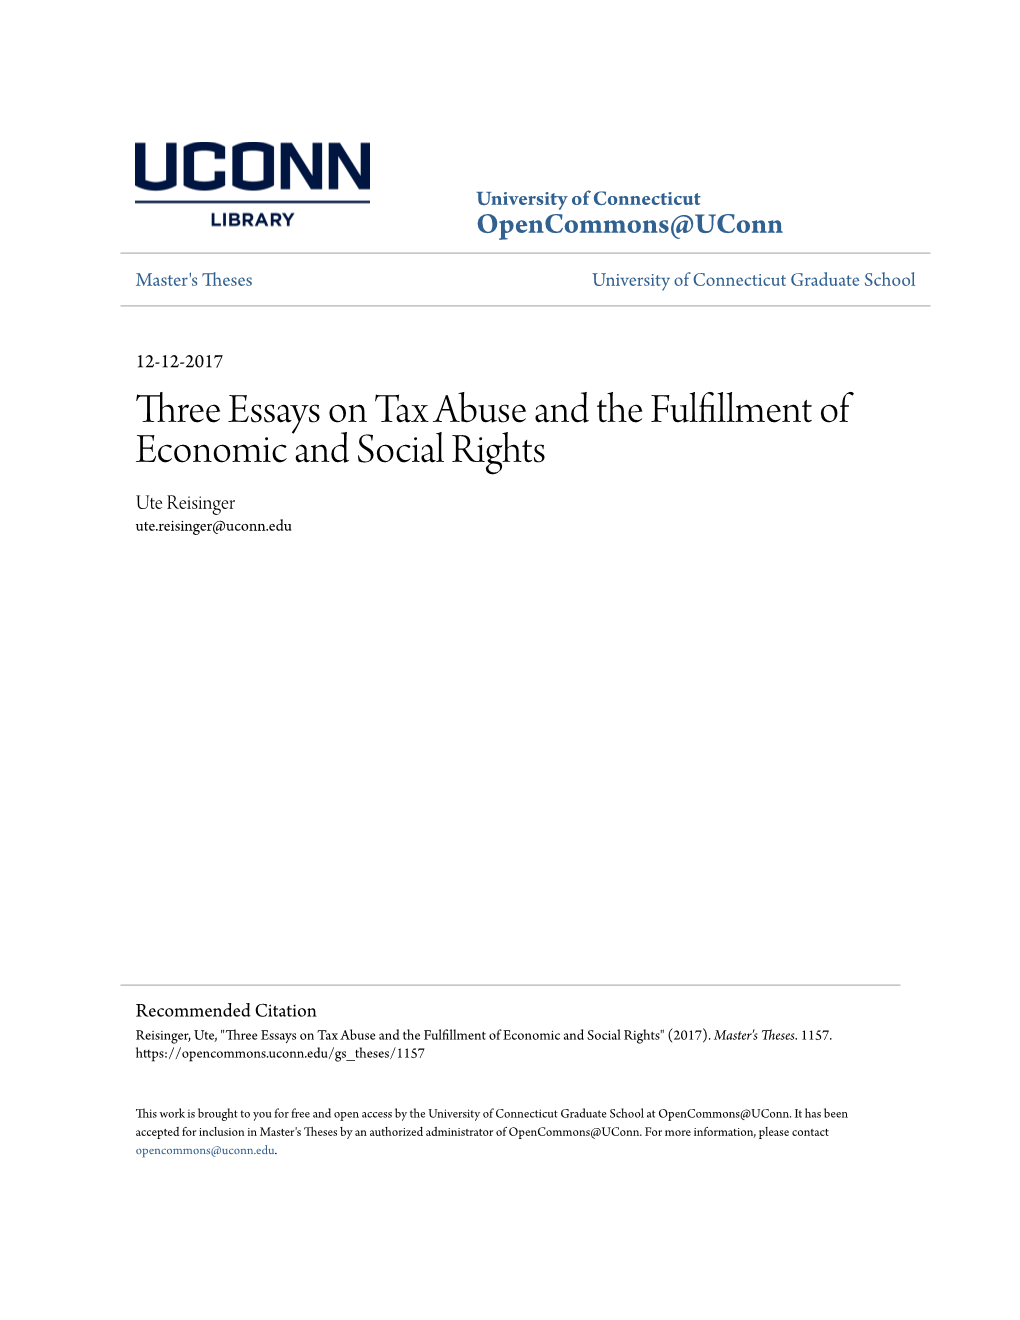 Three Essays on Tax Abuse and the Fulfillment of Economic and Social Rights Ute Reisinger Ute.Reisinger@Uconn.Edu